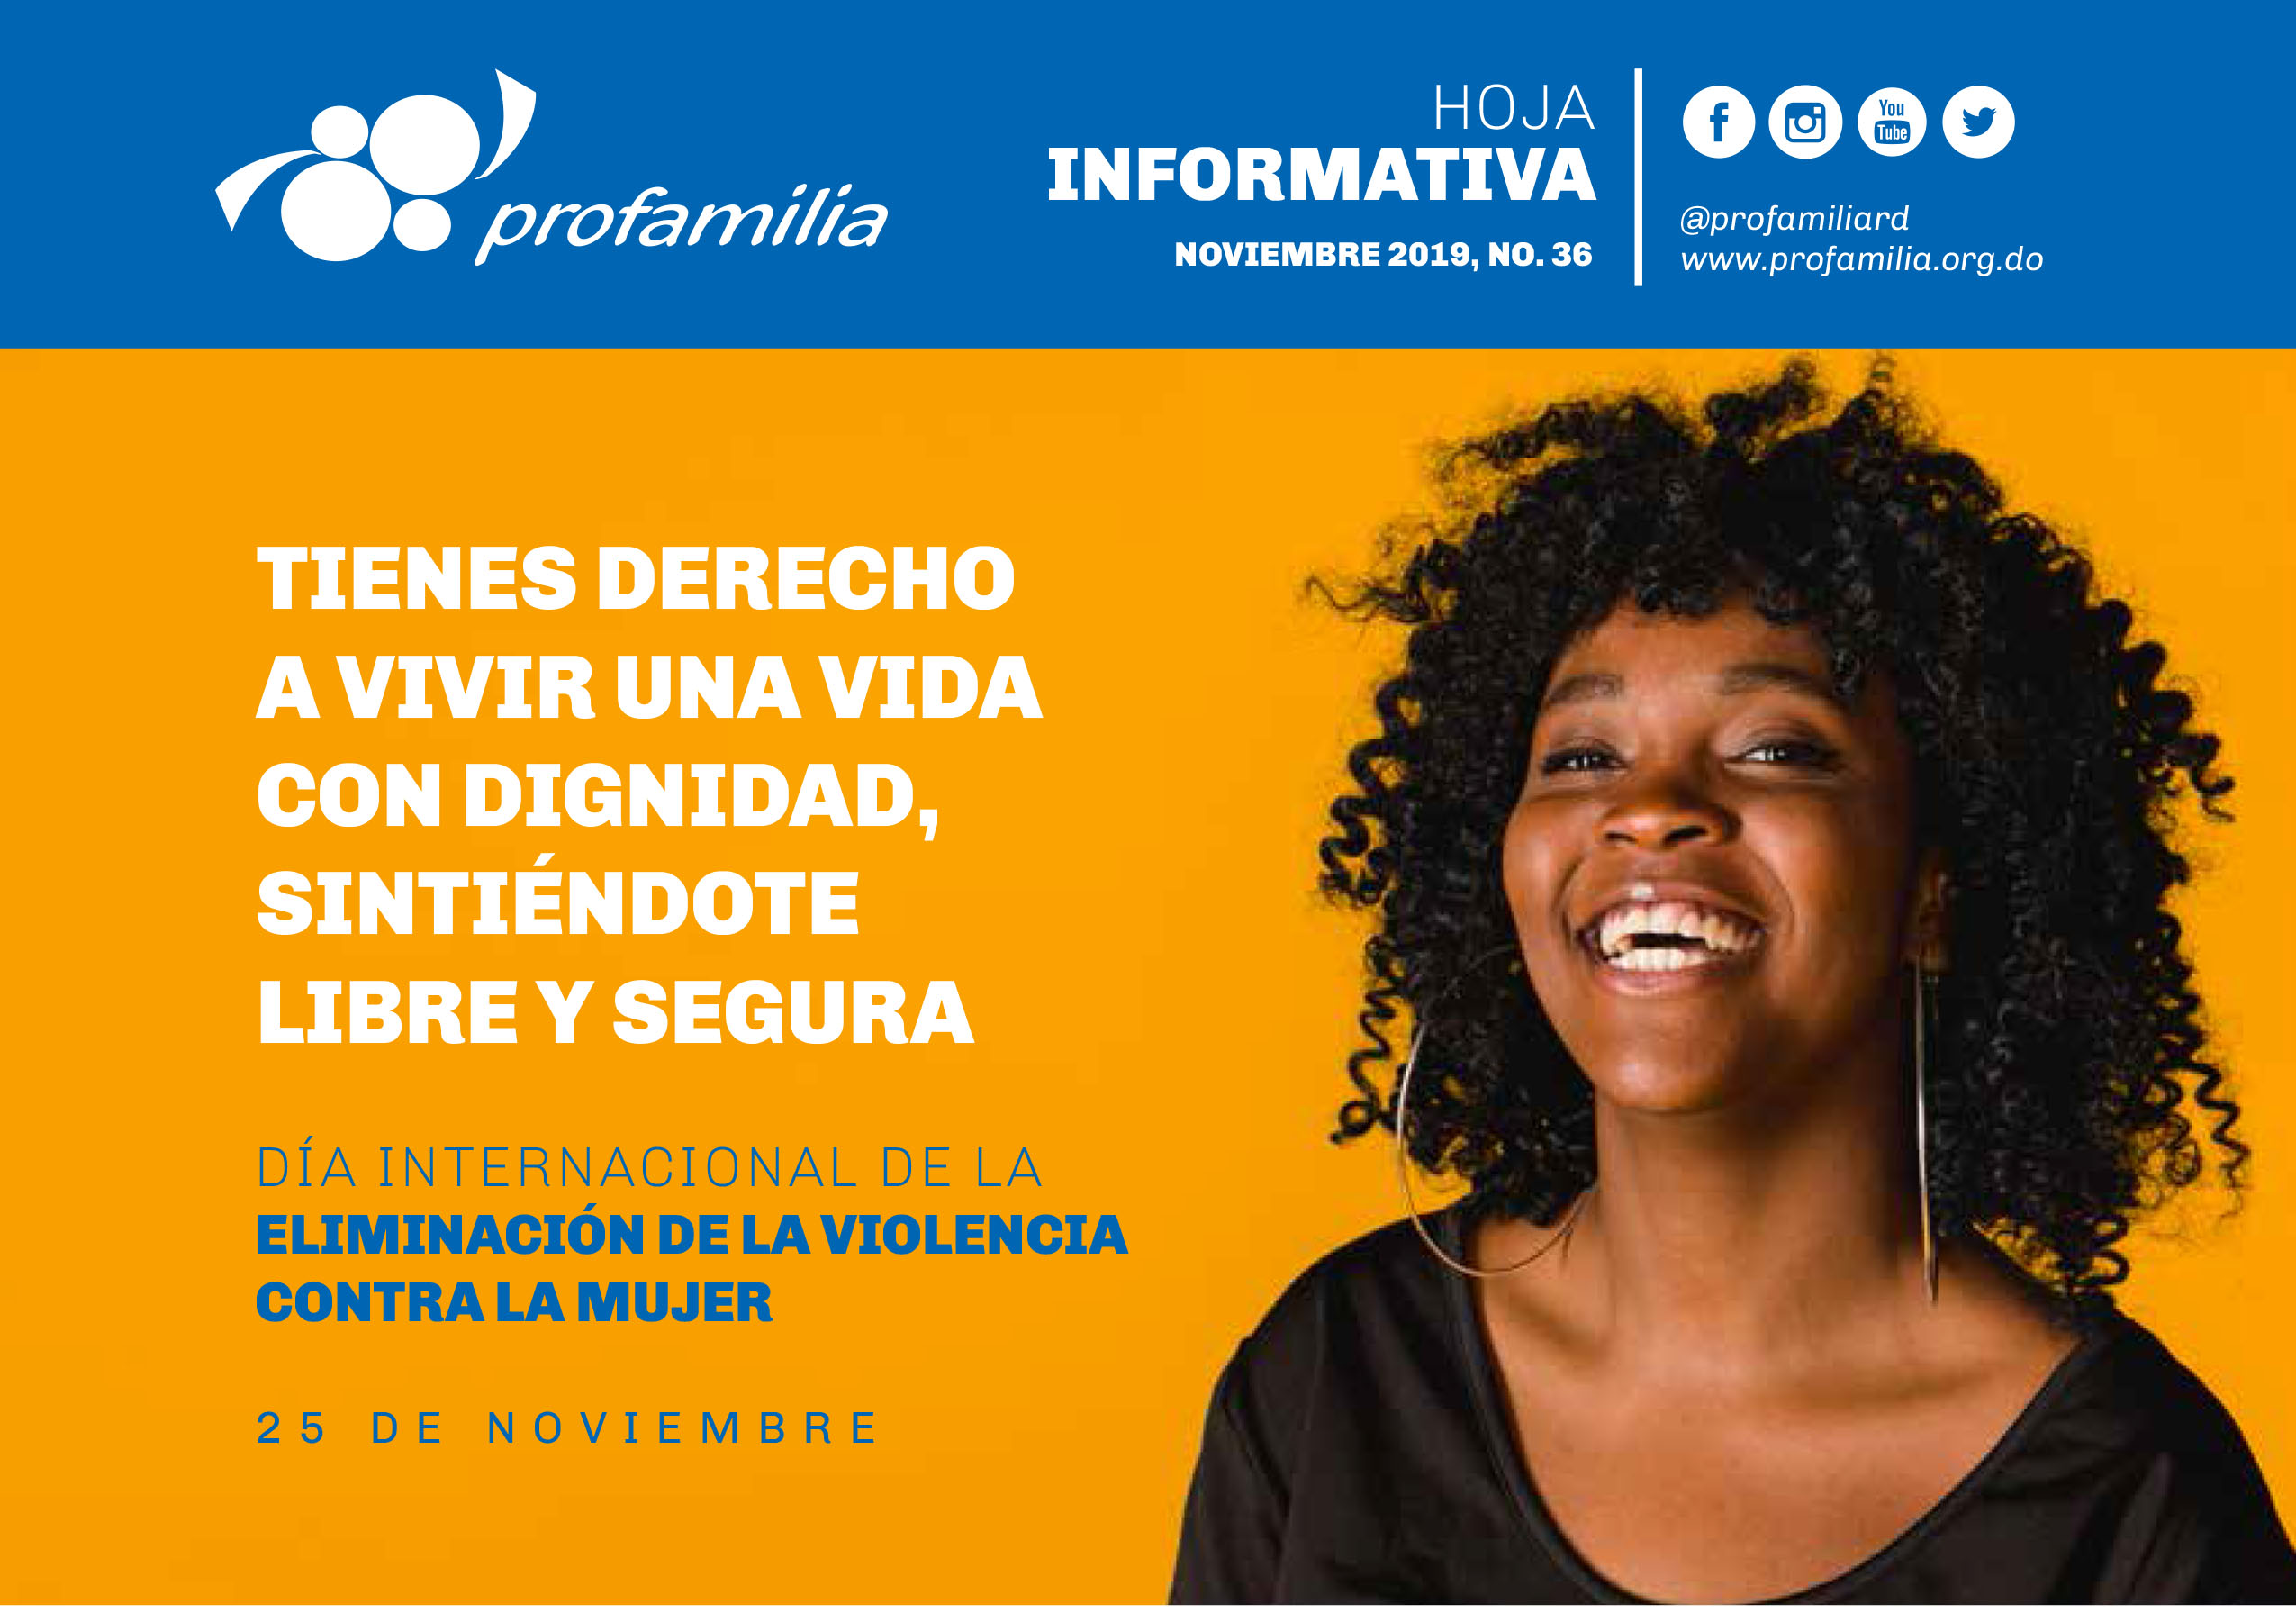 25 de Novimbre: Día Internacional de la Eliminación de la Violencia contra la Mujer, Hoja Informativa No. 36